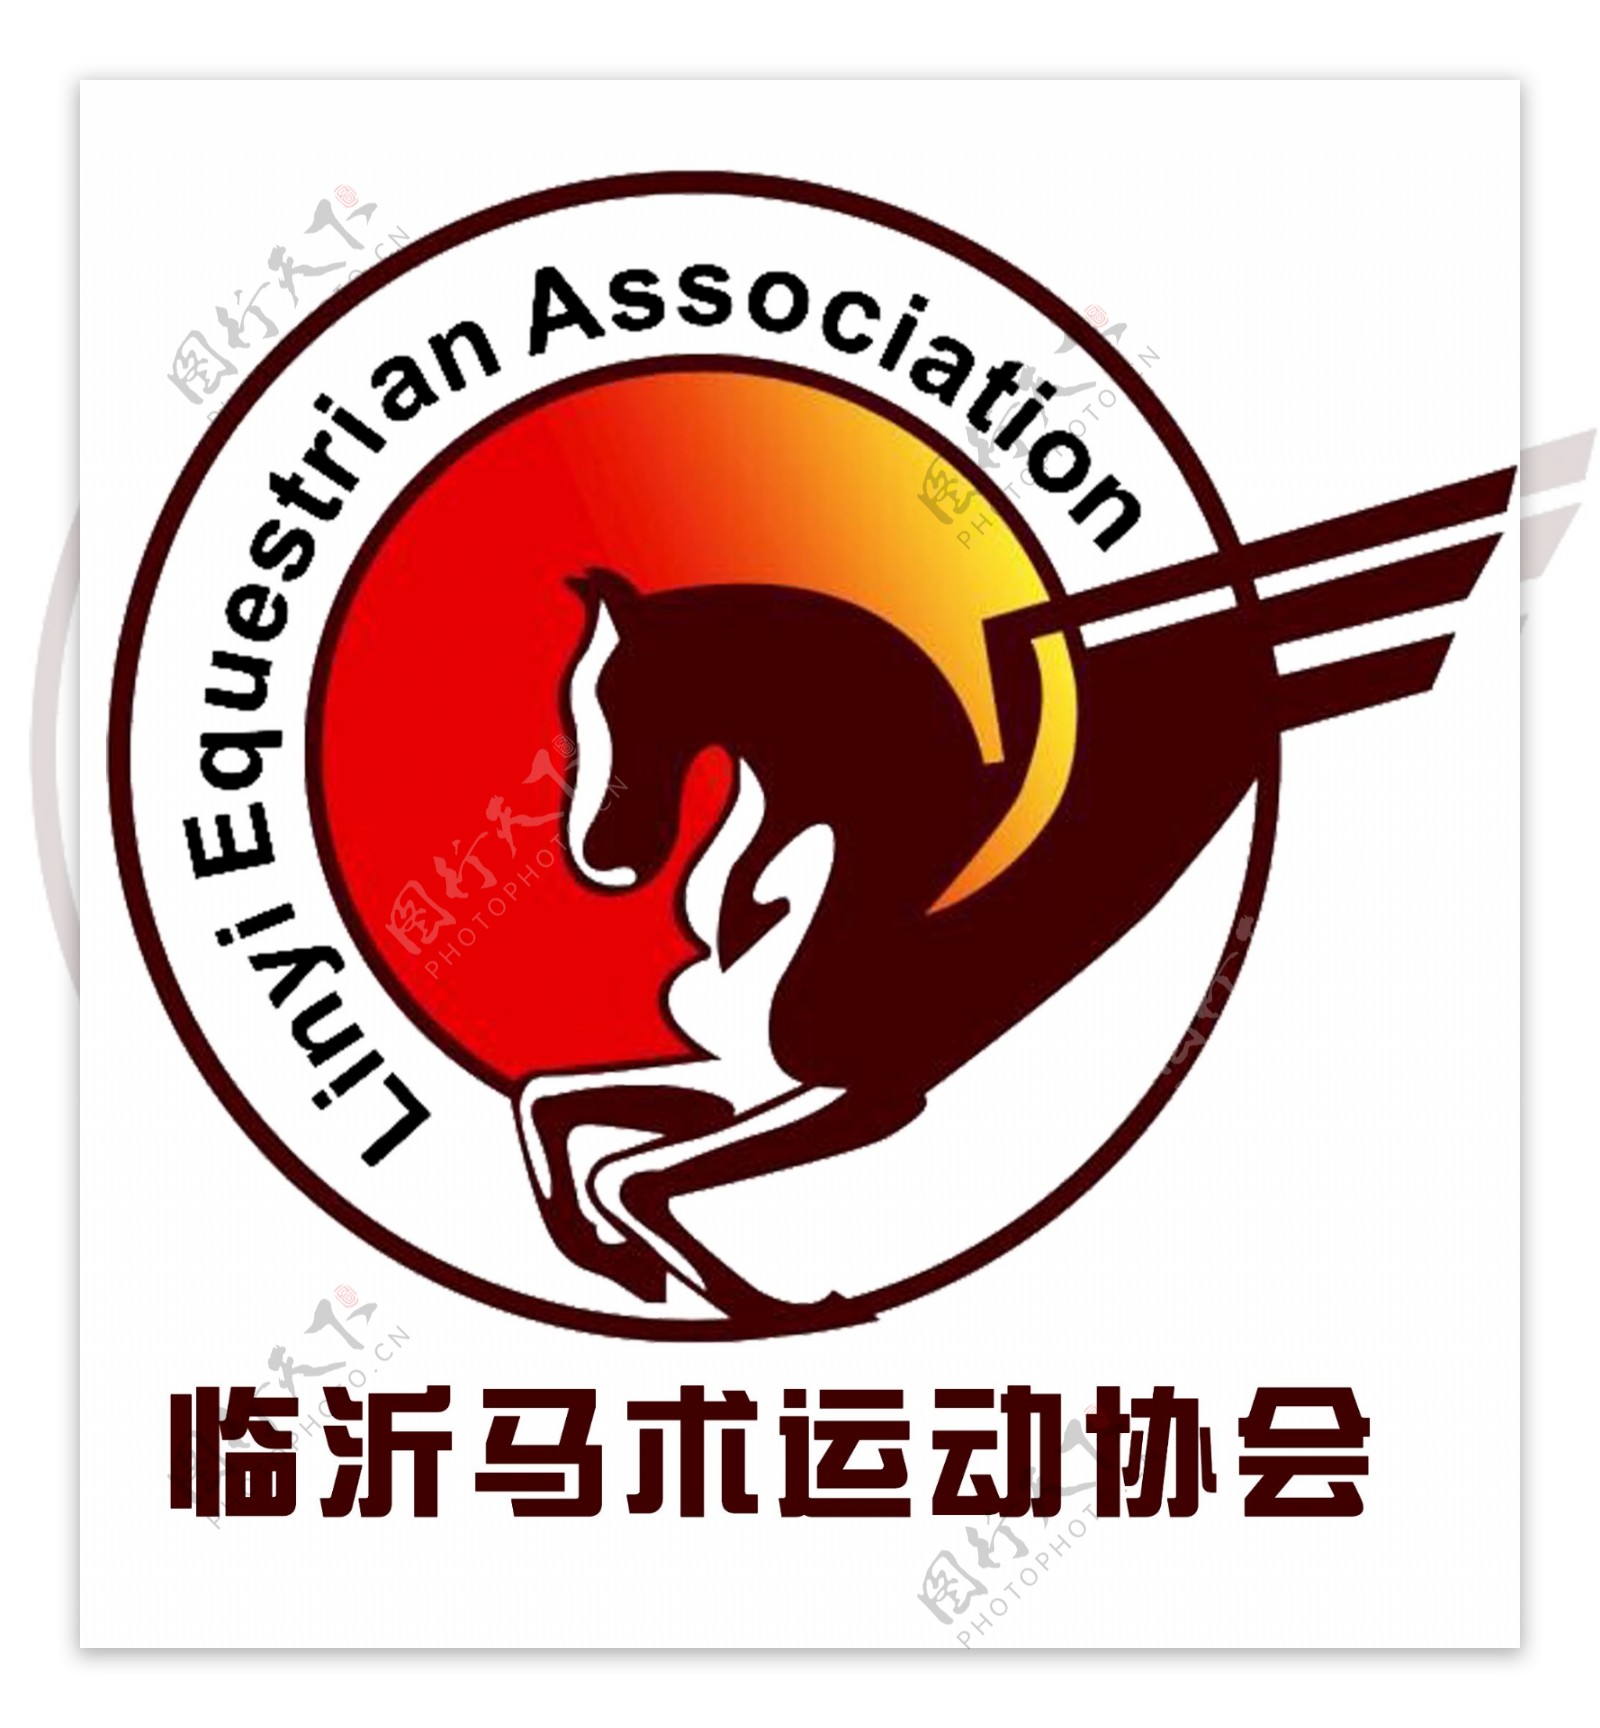 马术运动协会logo